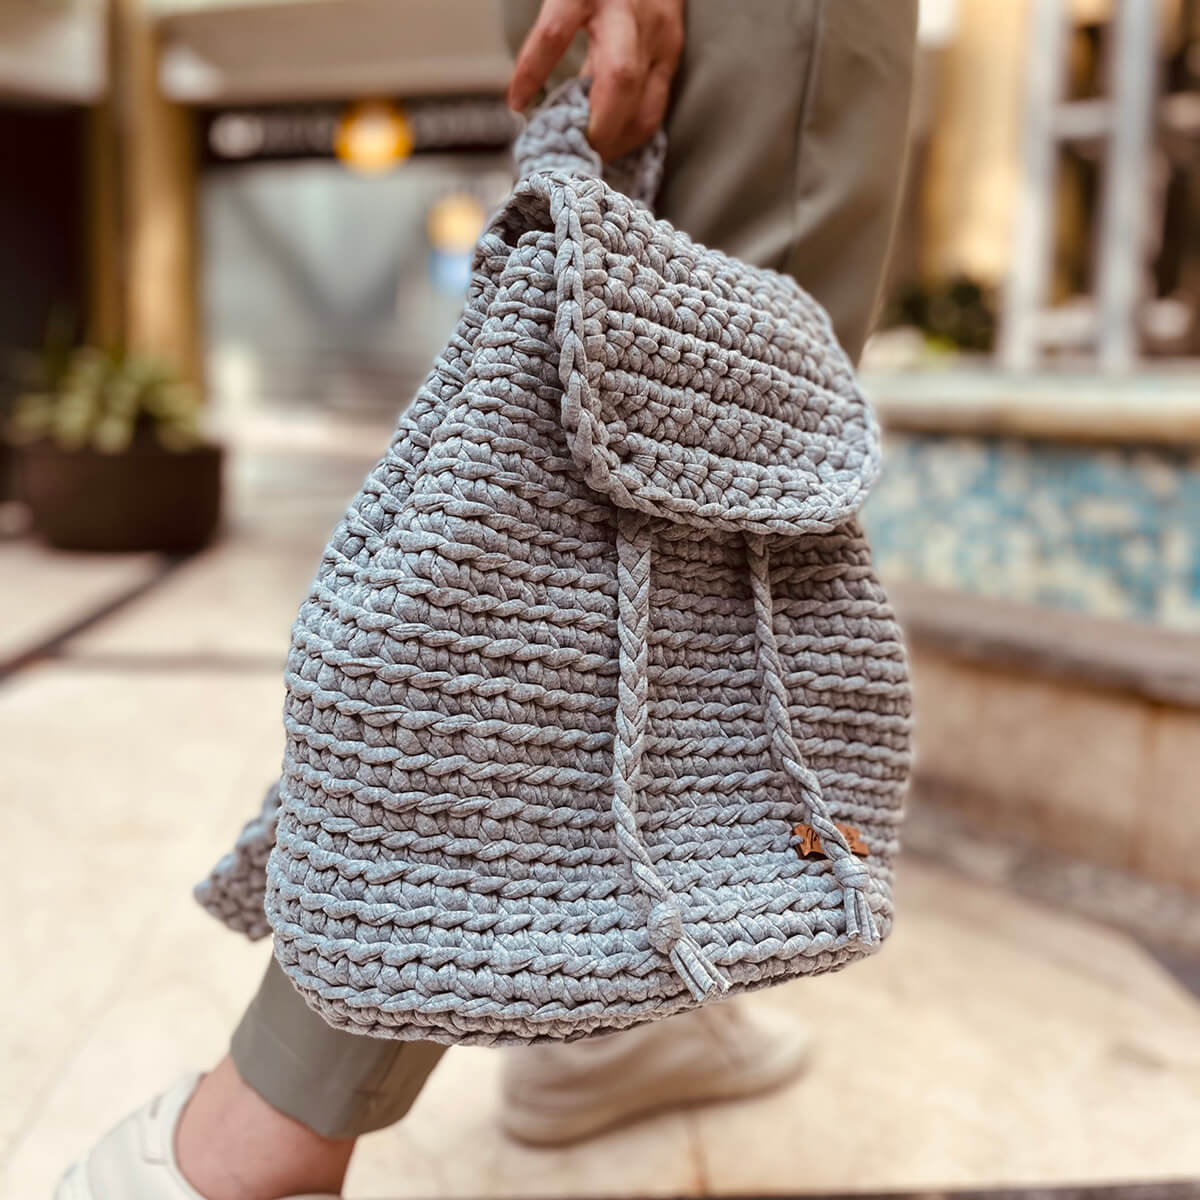 Crochet Backpack